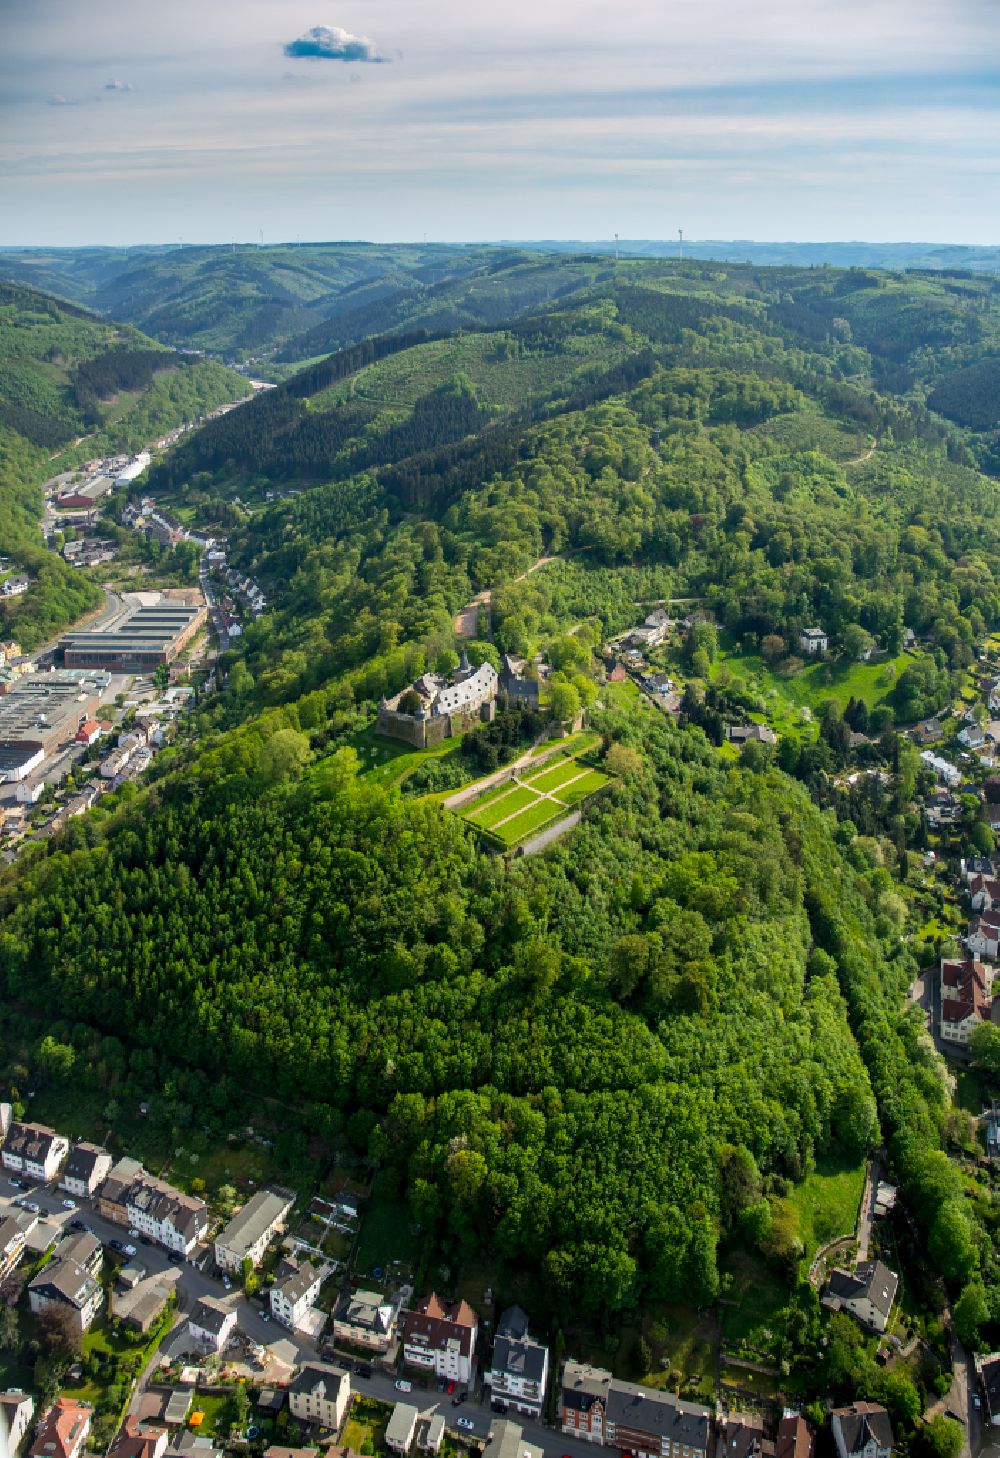 Luftbild Hagen - Burganlage des Schloss im Ortsteil Hohenlimburg in Hagen im Bundesland Nordrhein-Westfalen, Deutschland